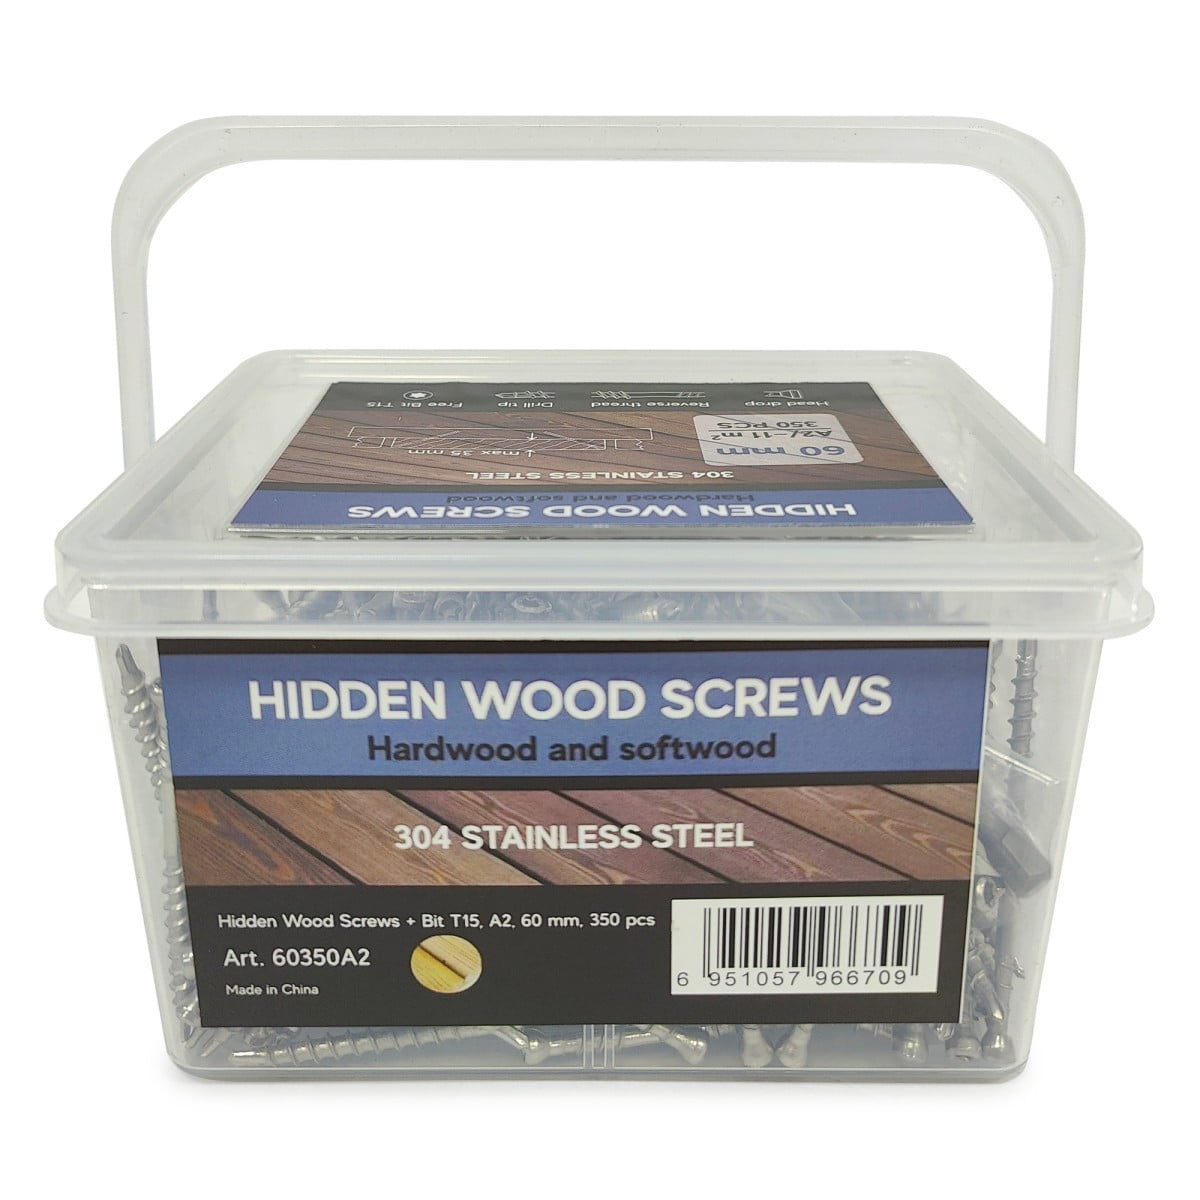 Samorezy dlya terrasy Hidden Wood Screws A2 60 mm 350 sht 2